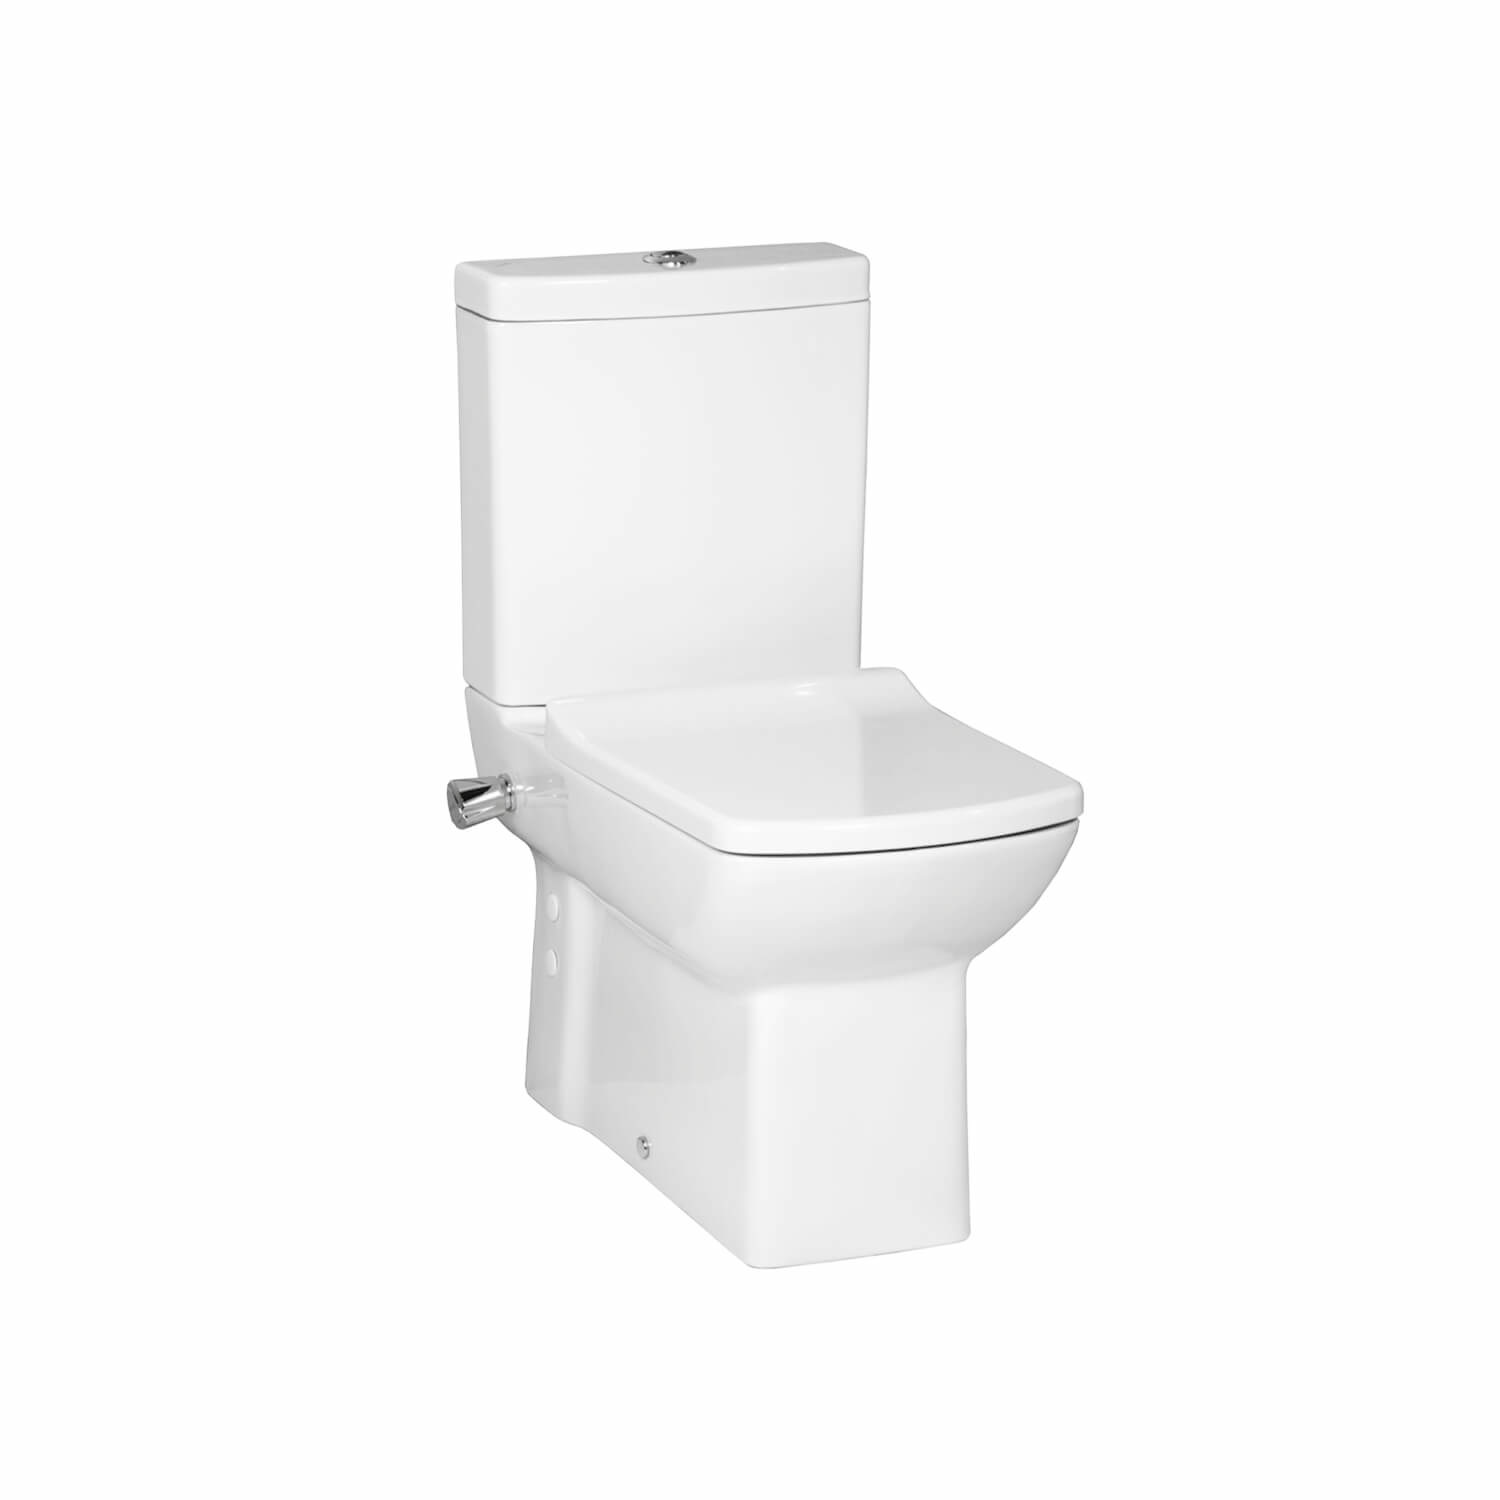 duidelijk Vlot Op te slaan Staand toilet met bidet kopen? Modern - Hygiënisch en betaalbaar I  Sani4Comfort